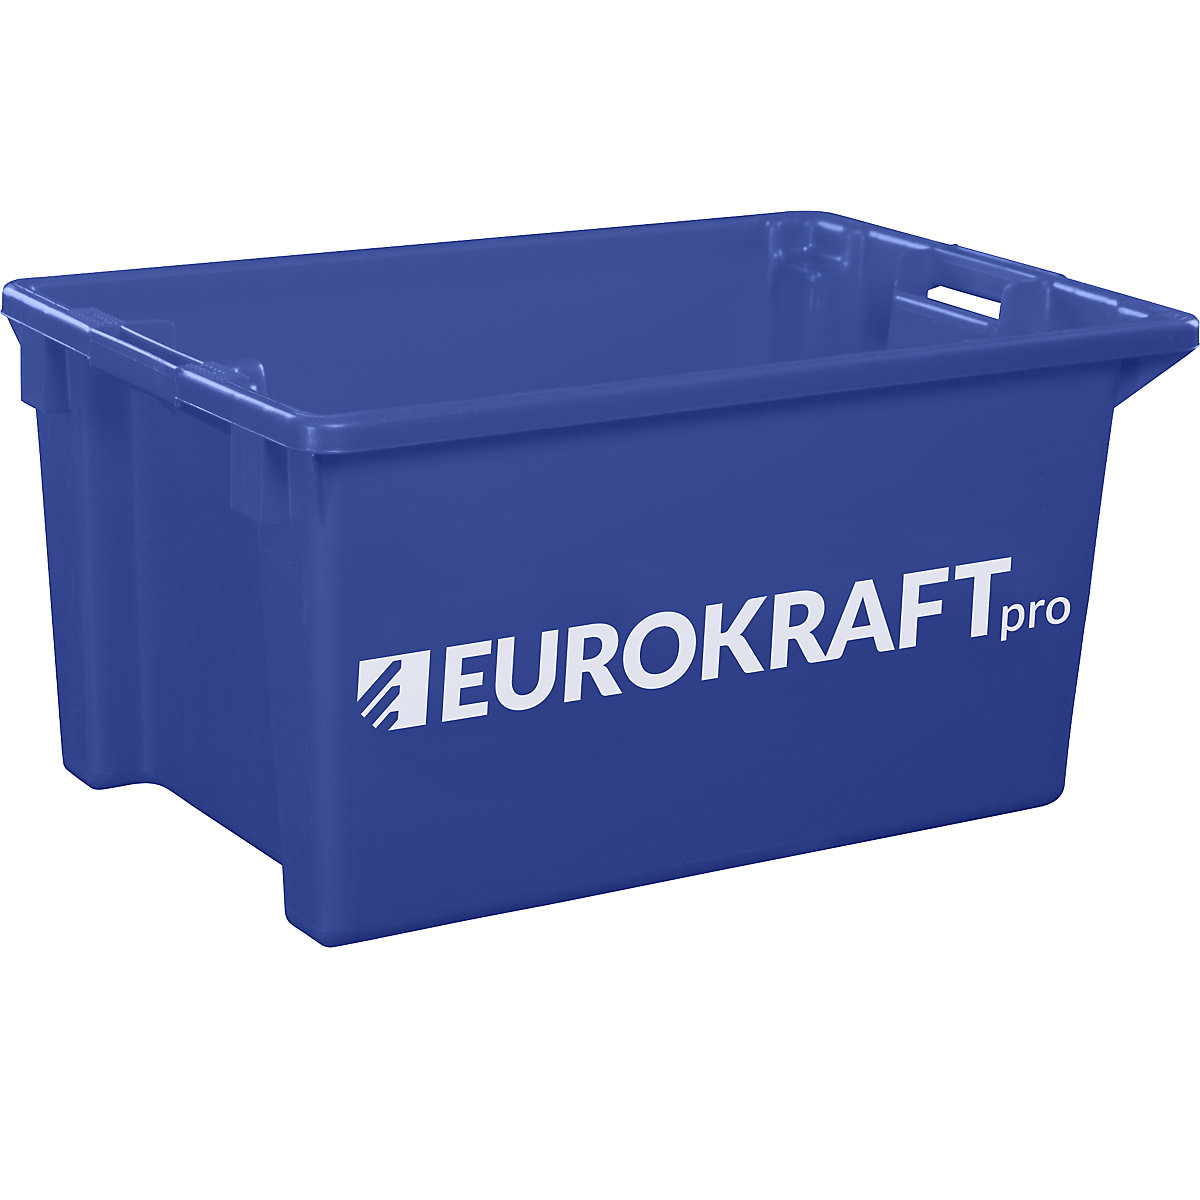 EUROKRAFTpro Drehstapelbehälter aus lebensmittelechtem Polypropylen, Inhalt 70 Liter, VE 2 Stk, Wände und Boden geschlossen, blau